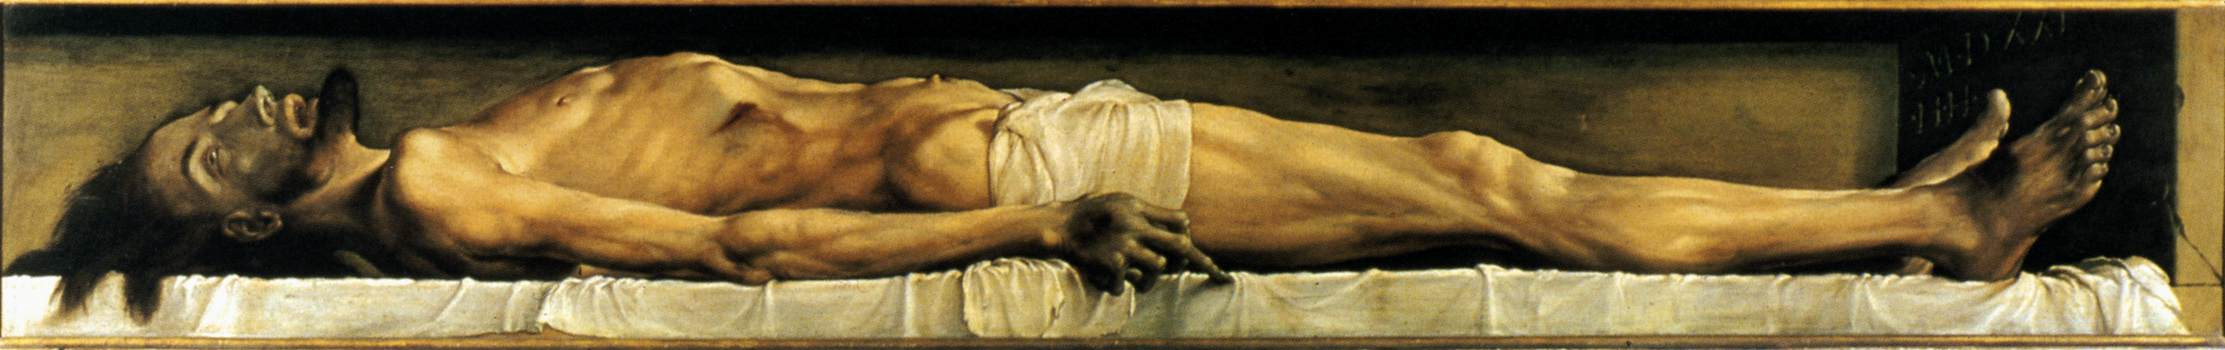 Ганс Гольбейн Младший, «Мертвый Христос в&nbsp;гробу», 1521-1522